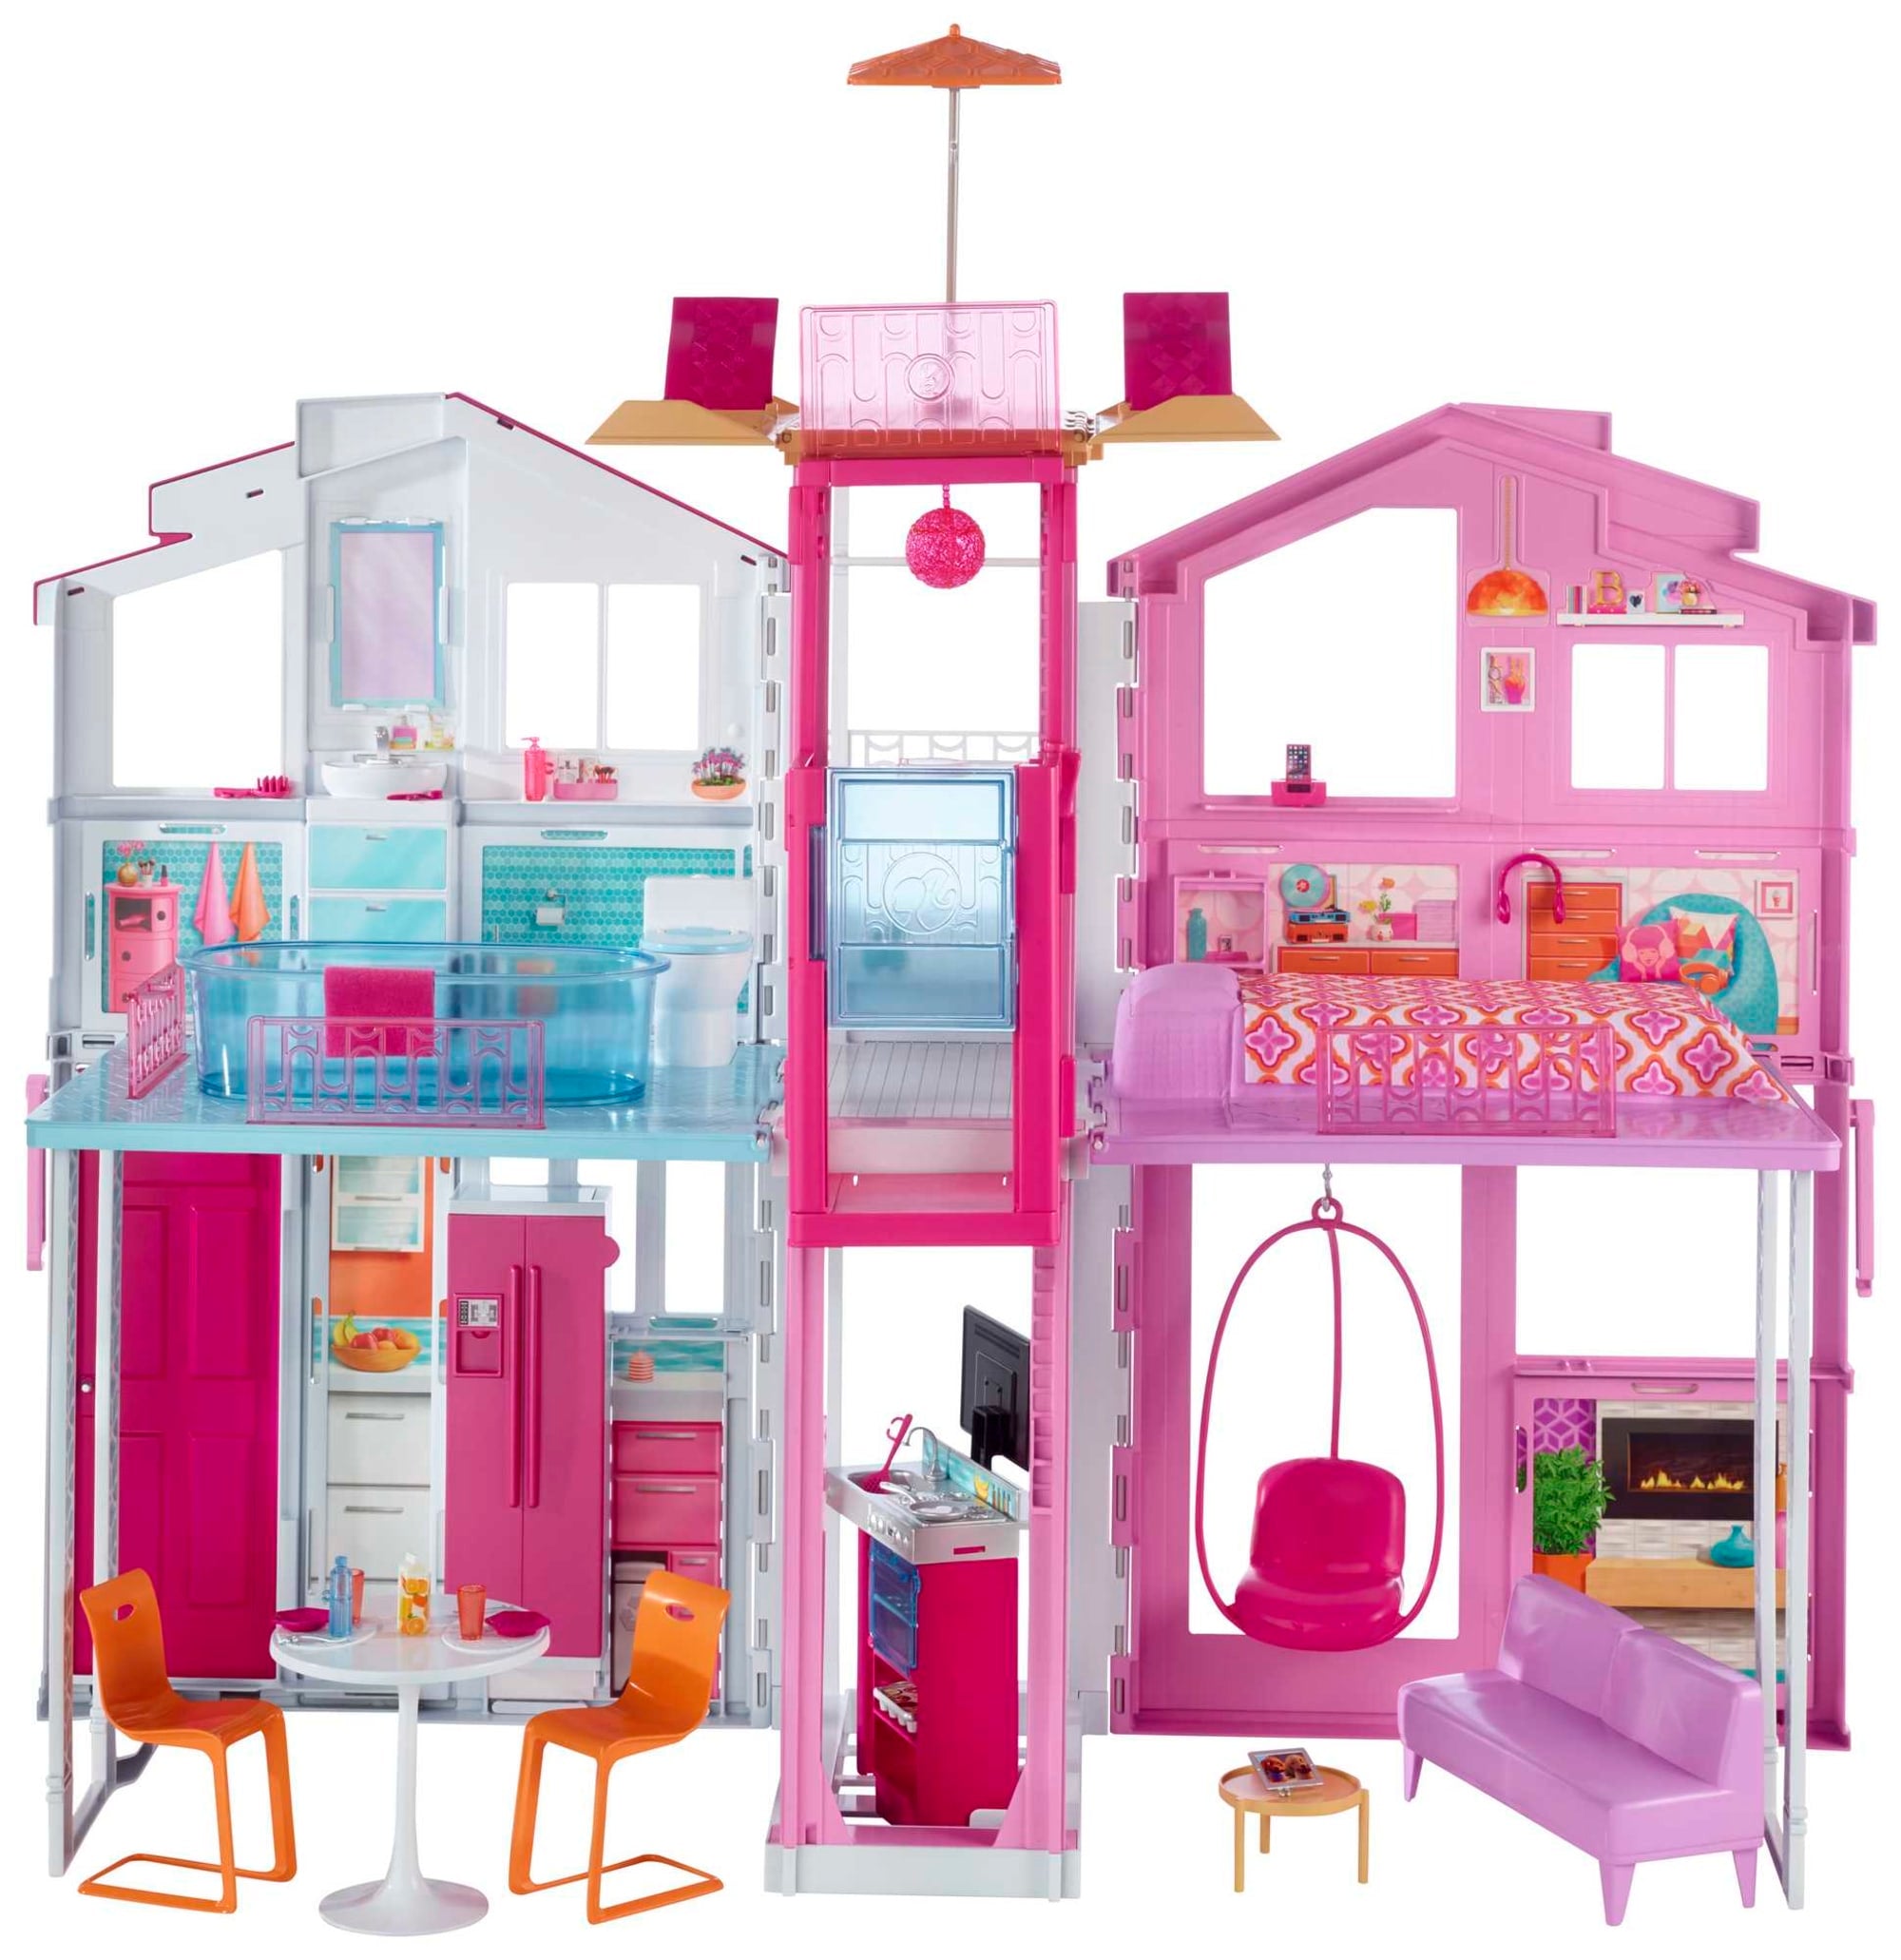 Playset Barbie - 90 Cm - Casa da Barbie - Casa Malibu - Mattel